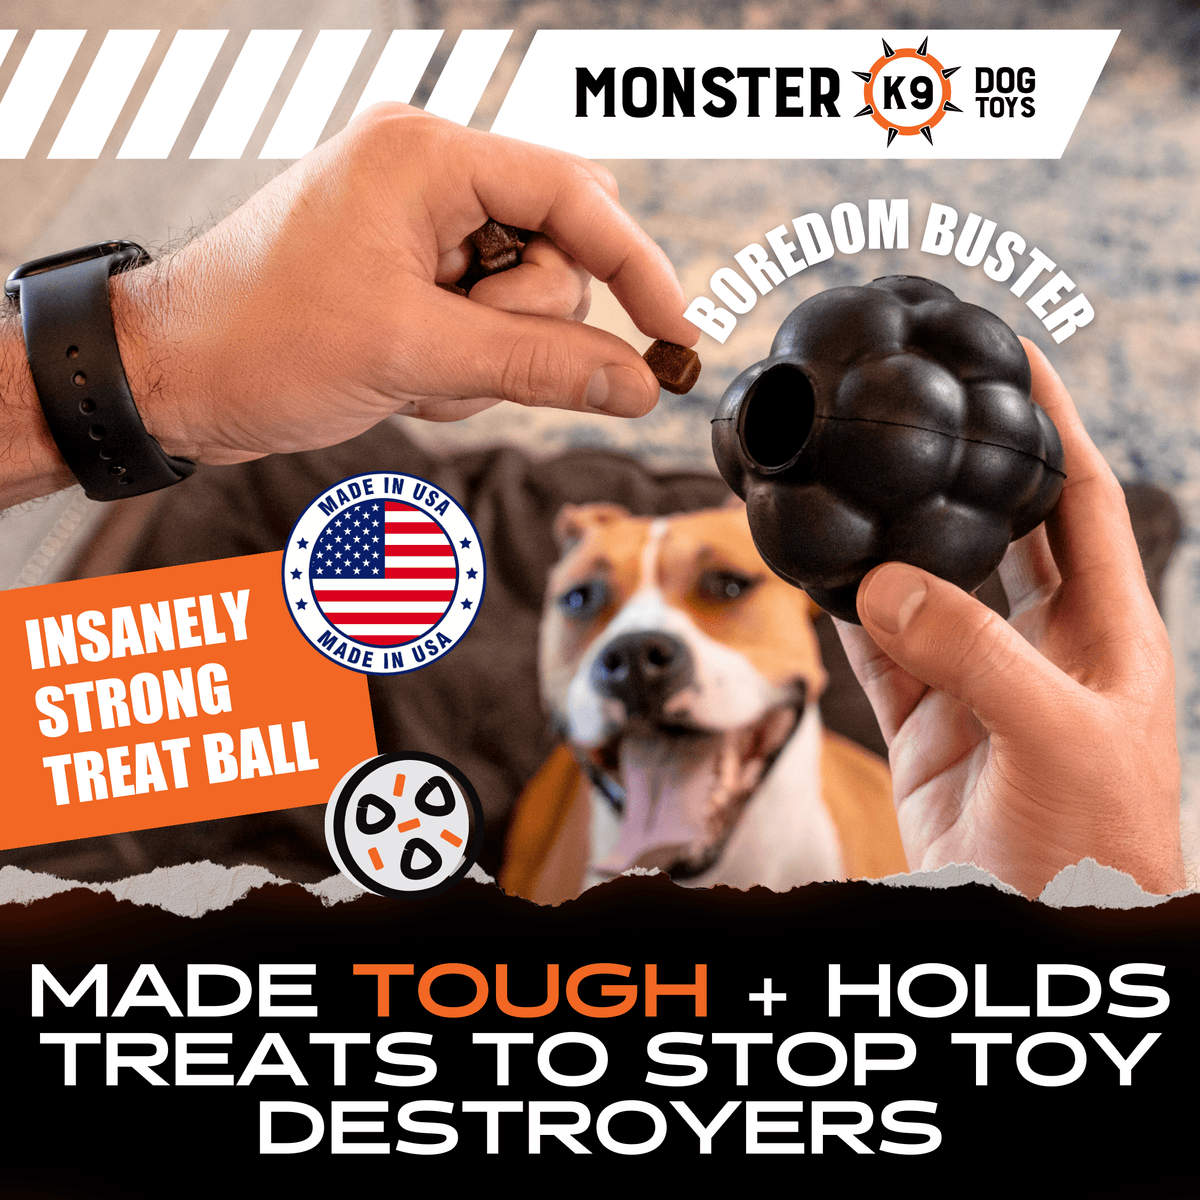 Treat Ball - Monster K9 Dog Toys